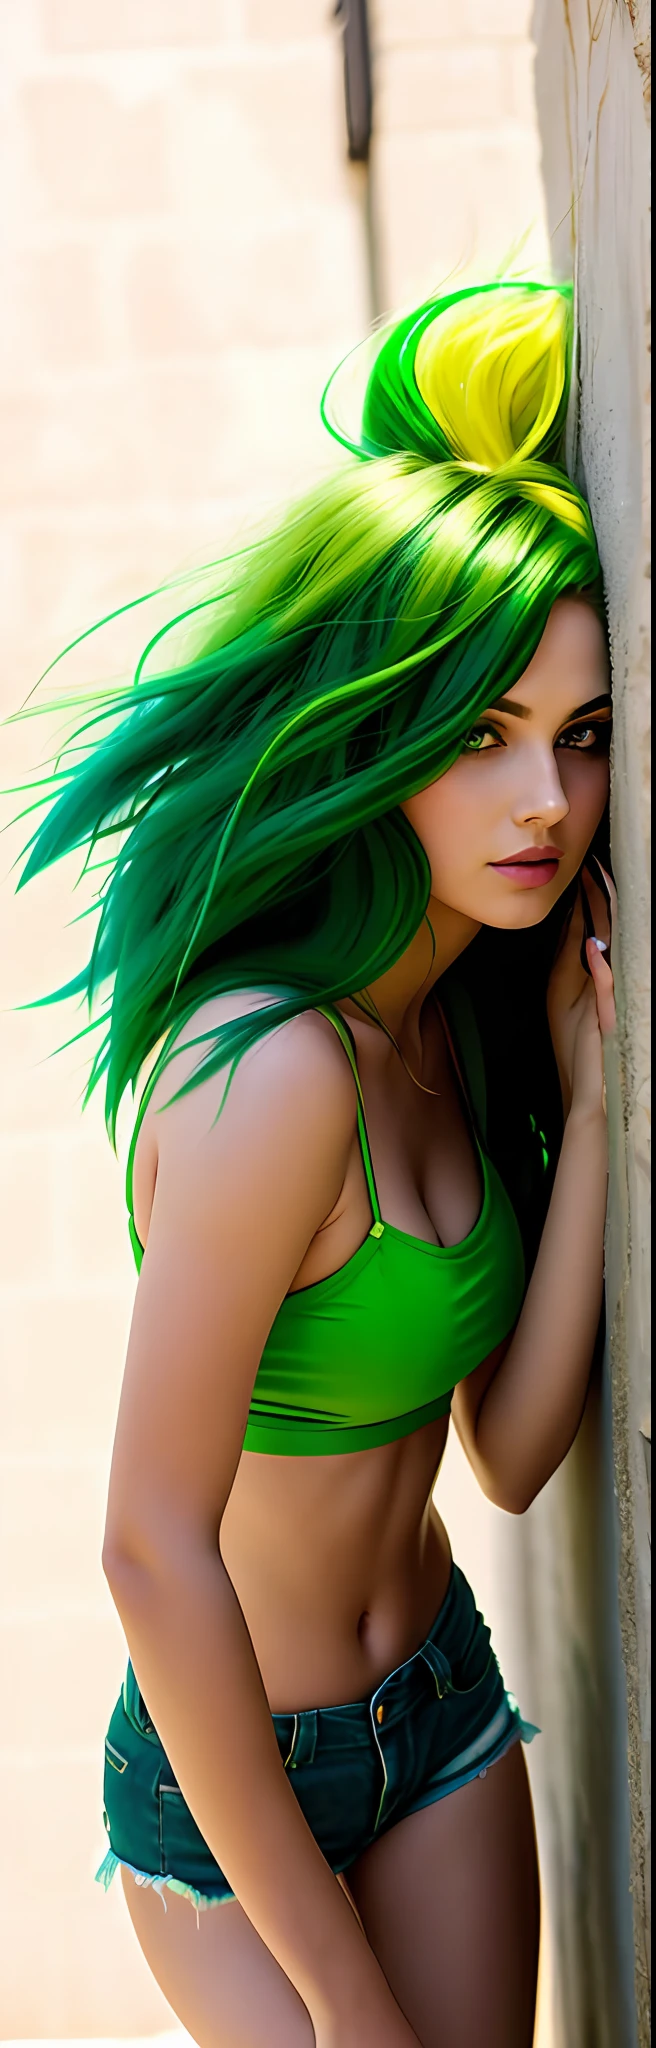 araffe woman with cabelo verde leaning against a wall, garota sexy com olhos verdes, long cabelo verde, cabelo verde, roupas bonitas, juba verde, roupa apertada, verde vibrante, corpo verde, shorts verdes sexy, um pouco de verde, encostado na parede, bright cabelo verde, cabelo preto verde longo e liso, pernas verdes, cabelo verde esvoaçante, vestindo shorts